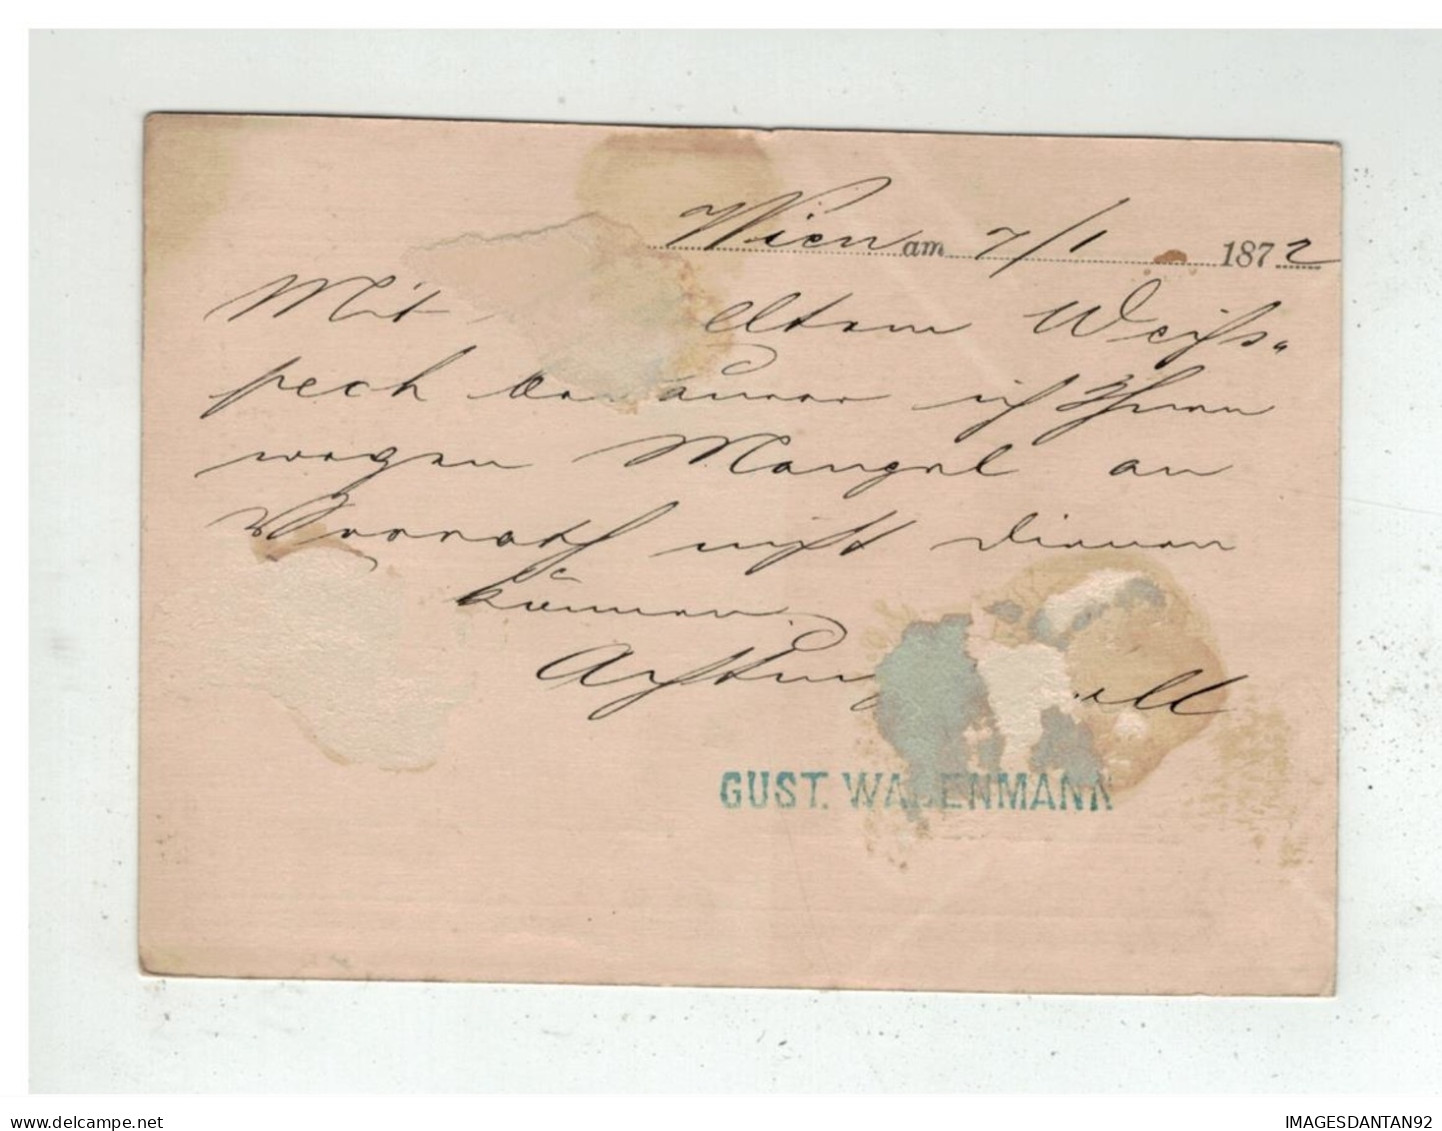 Autriche - Entier Postal 2 Kreuser De WIEN à Destination De KARLSTADT KARLOVAC CROATIA 1872 - Postwaardestukken